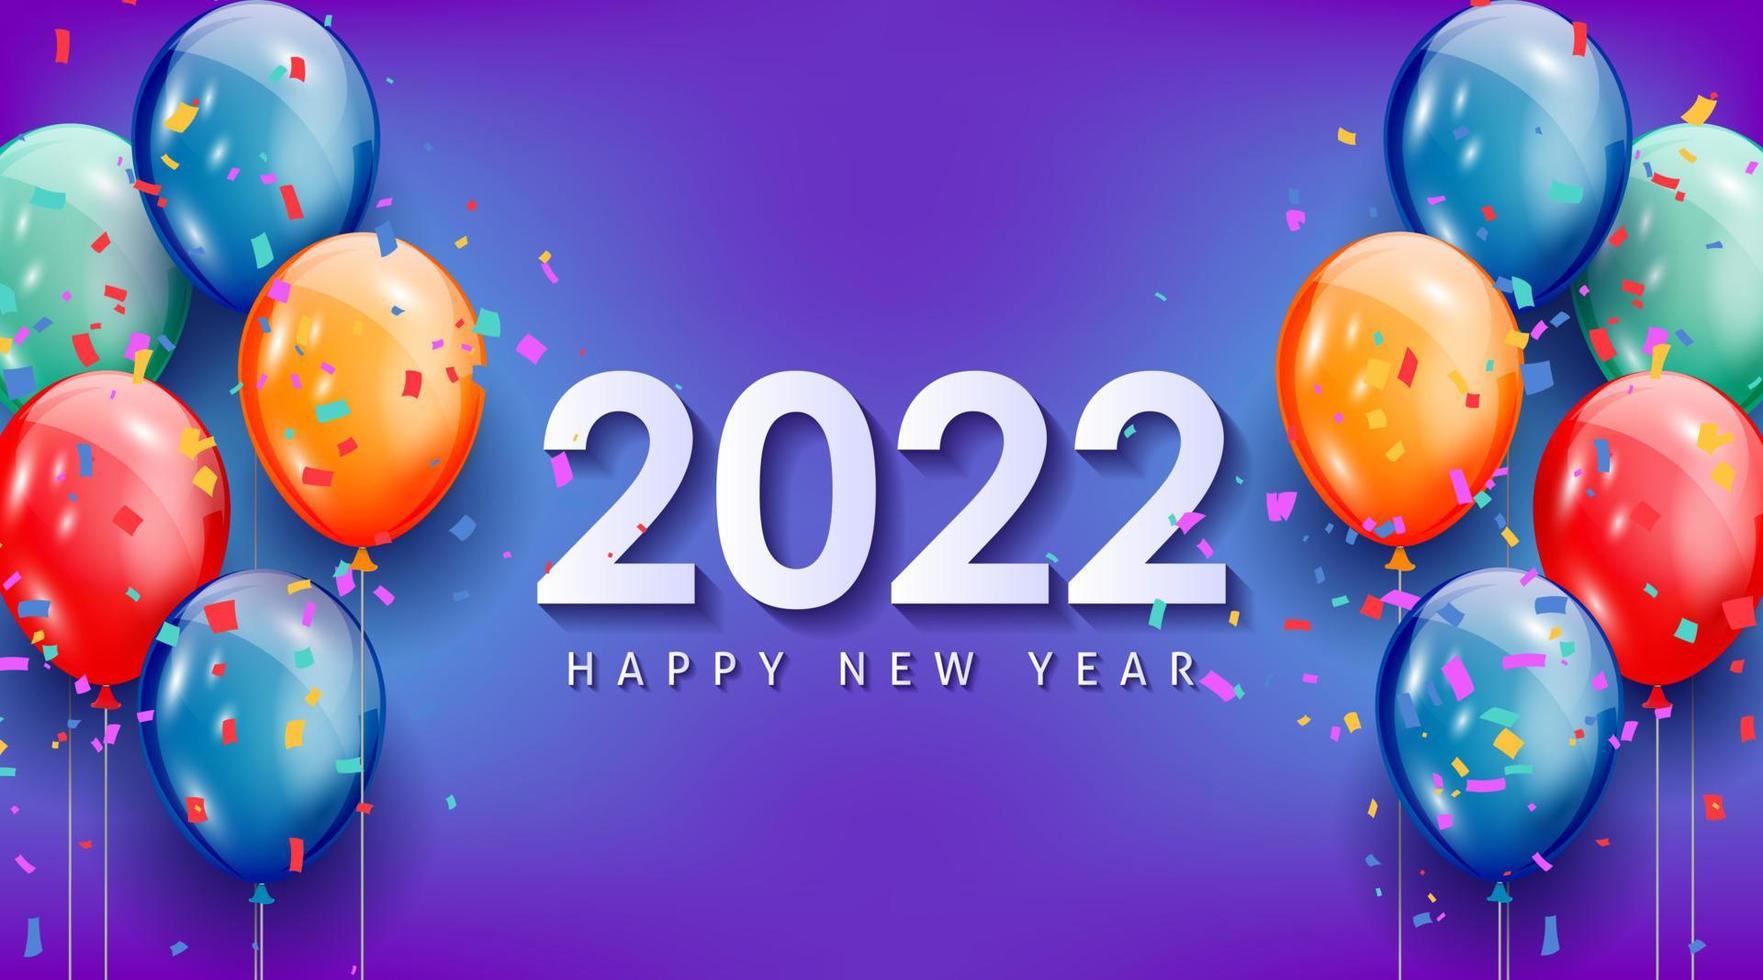 Feliz año nuevo 2022 tarjeta de felicitación con globos de colores realistas diseño de fondo de celebración para tarjetas de felicitación, carteles, pancartas. ilustración vectorial. vector